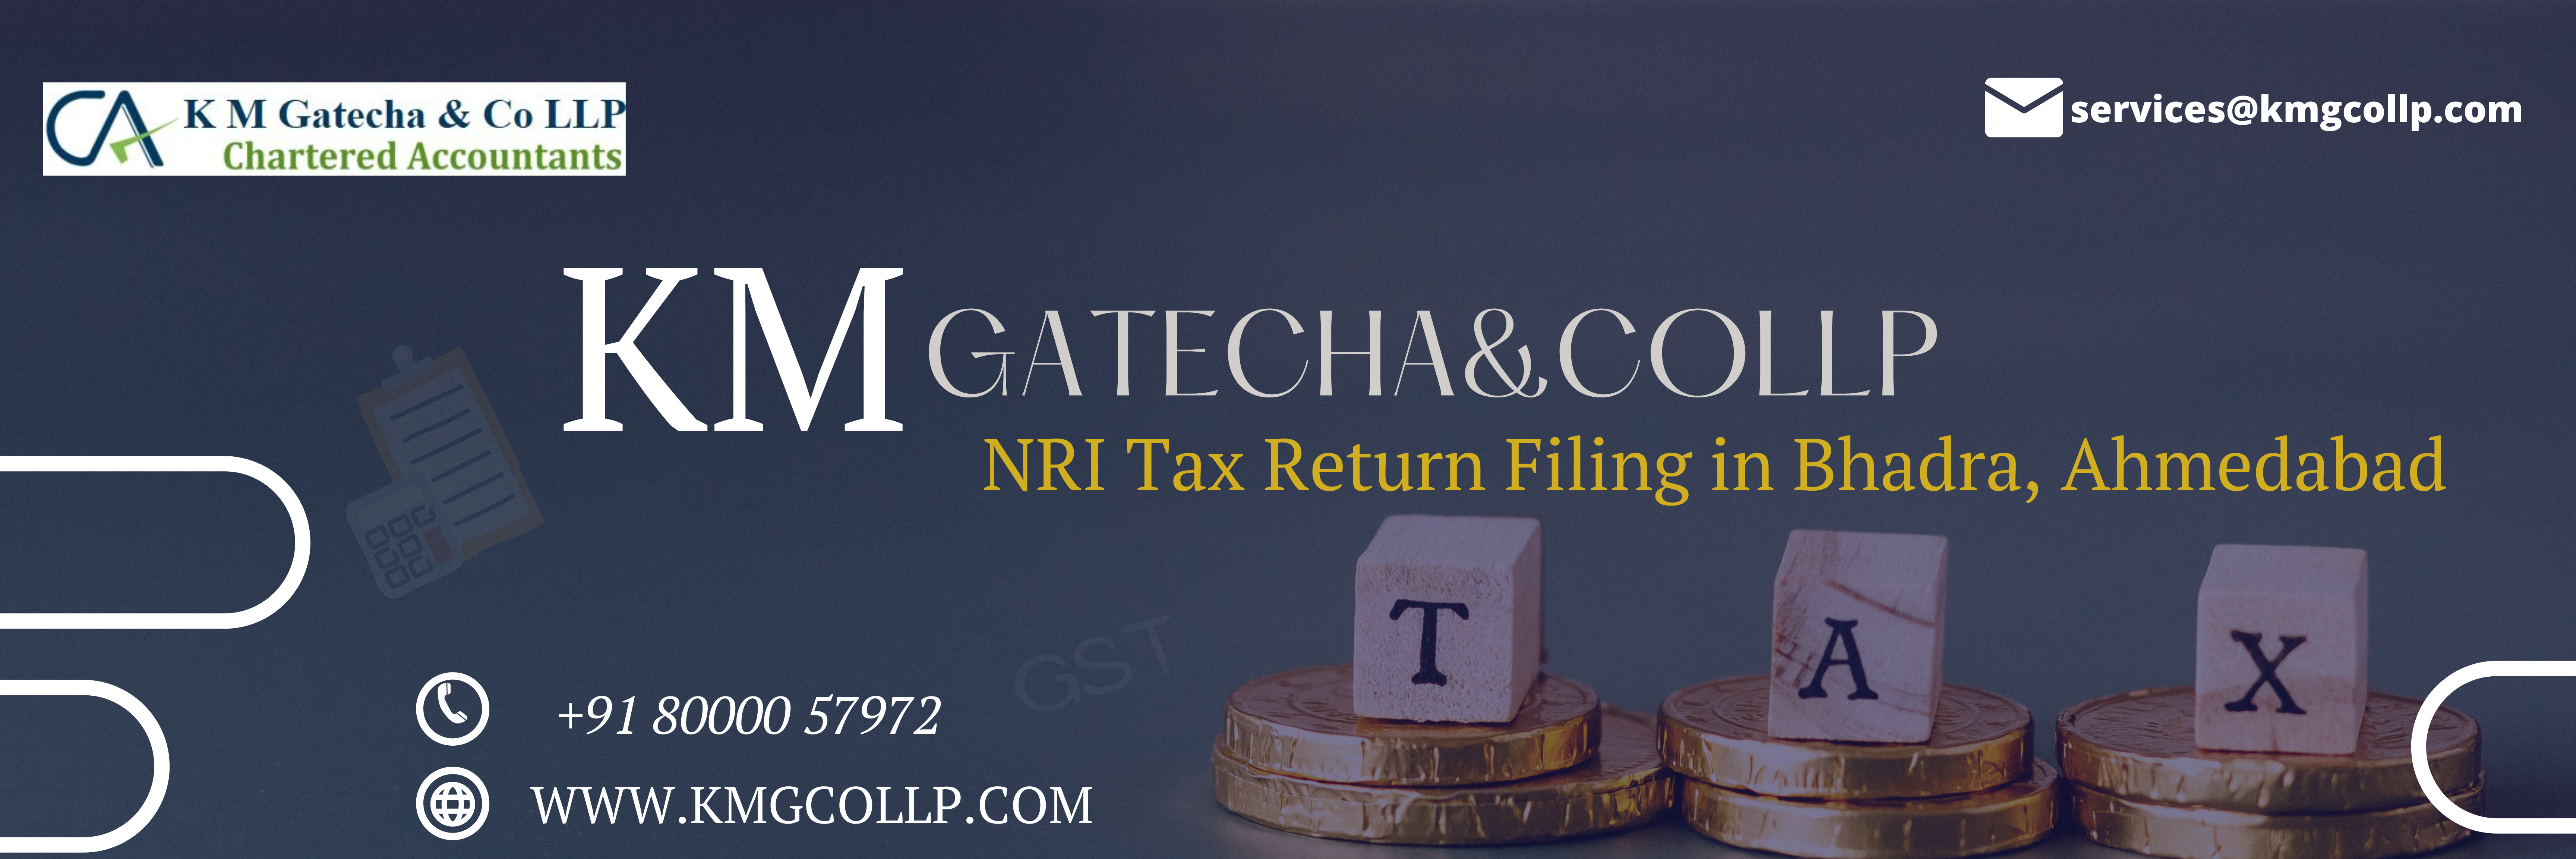 NRI Tax Return Filing in Bhadra, Ahmedabad